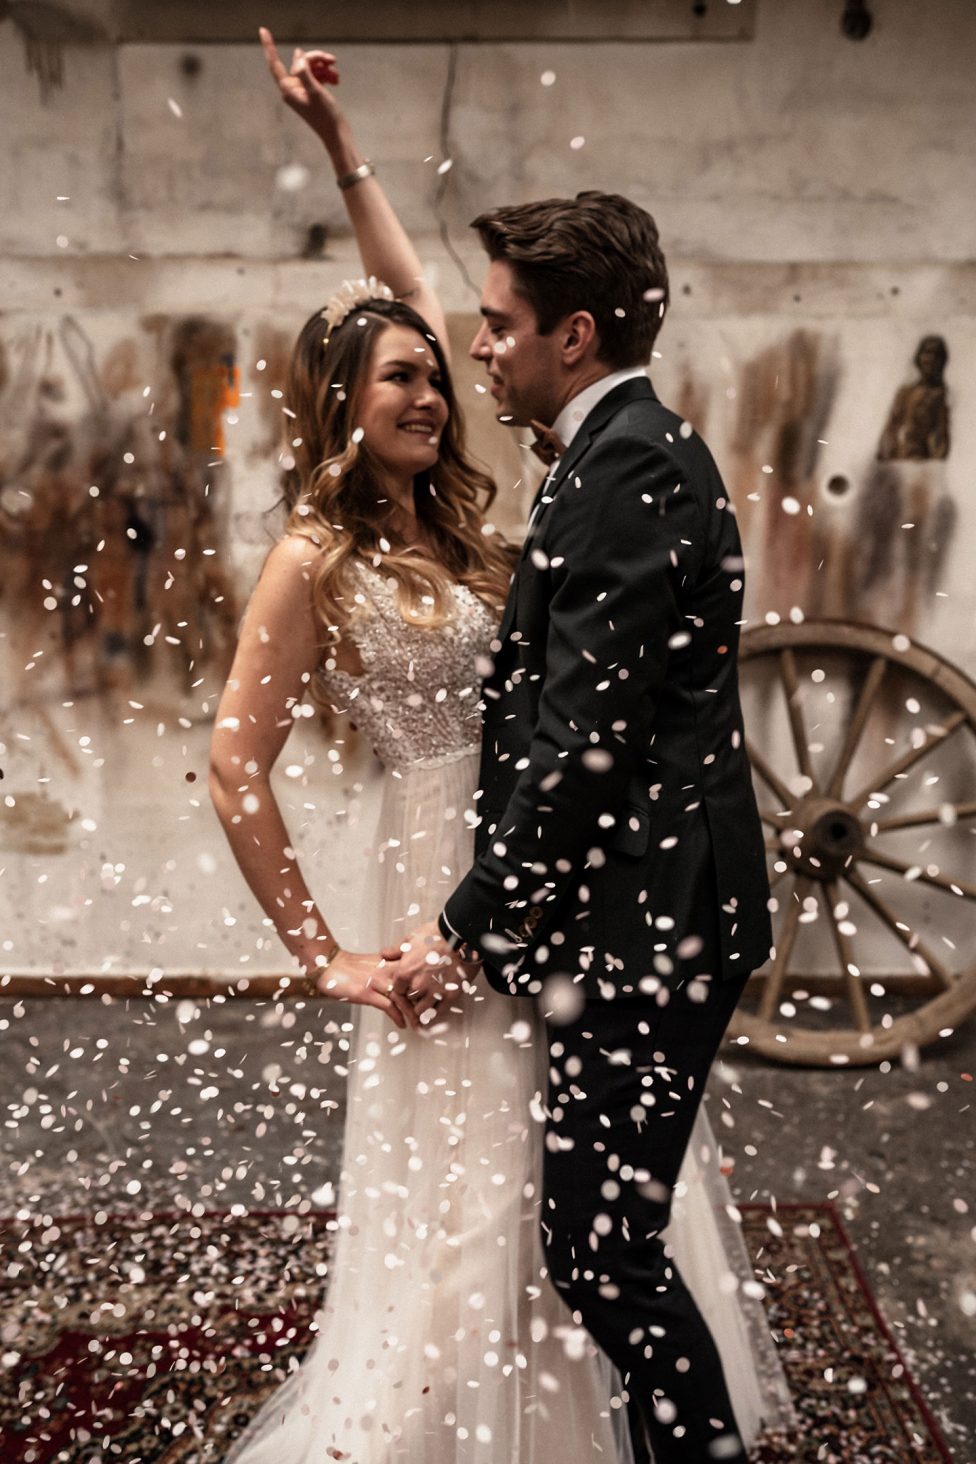 Hochzeitswahn - Ein fröhliches, frisch vermähltes Paar tanzt inmitten eines Konfettiregens, während die Braut begeistert den Arm streckt und der Bräutigam sie liebevoll ansieht. All dies fängt die festliche Atmosphäre ihrer Hochzeitsfeier ein.